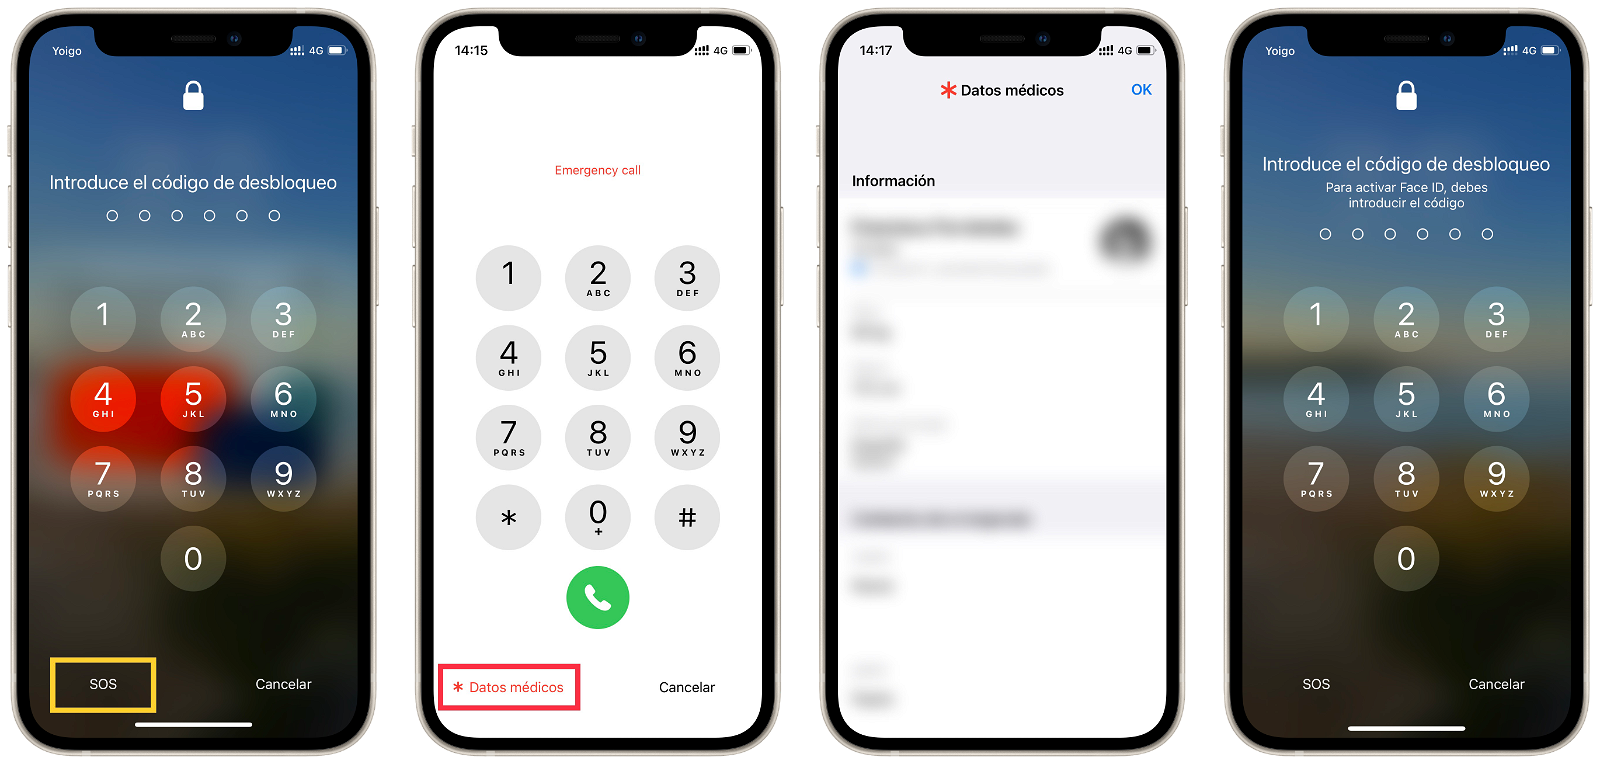 Desactivar Face ID o Touch ID temporalmente accediendo a los datos médicos en el iPhone